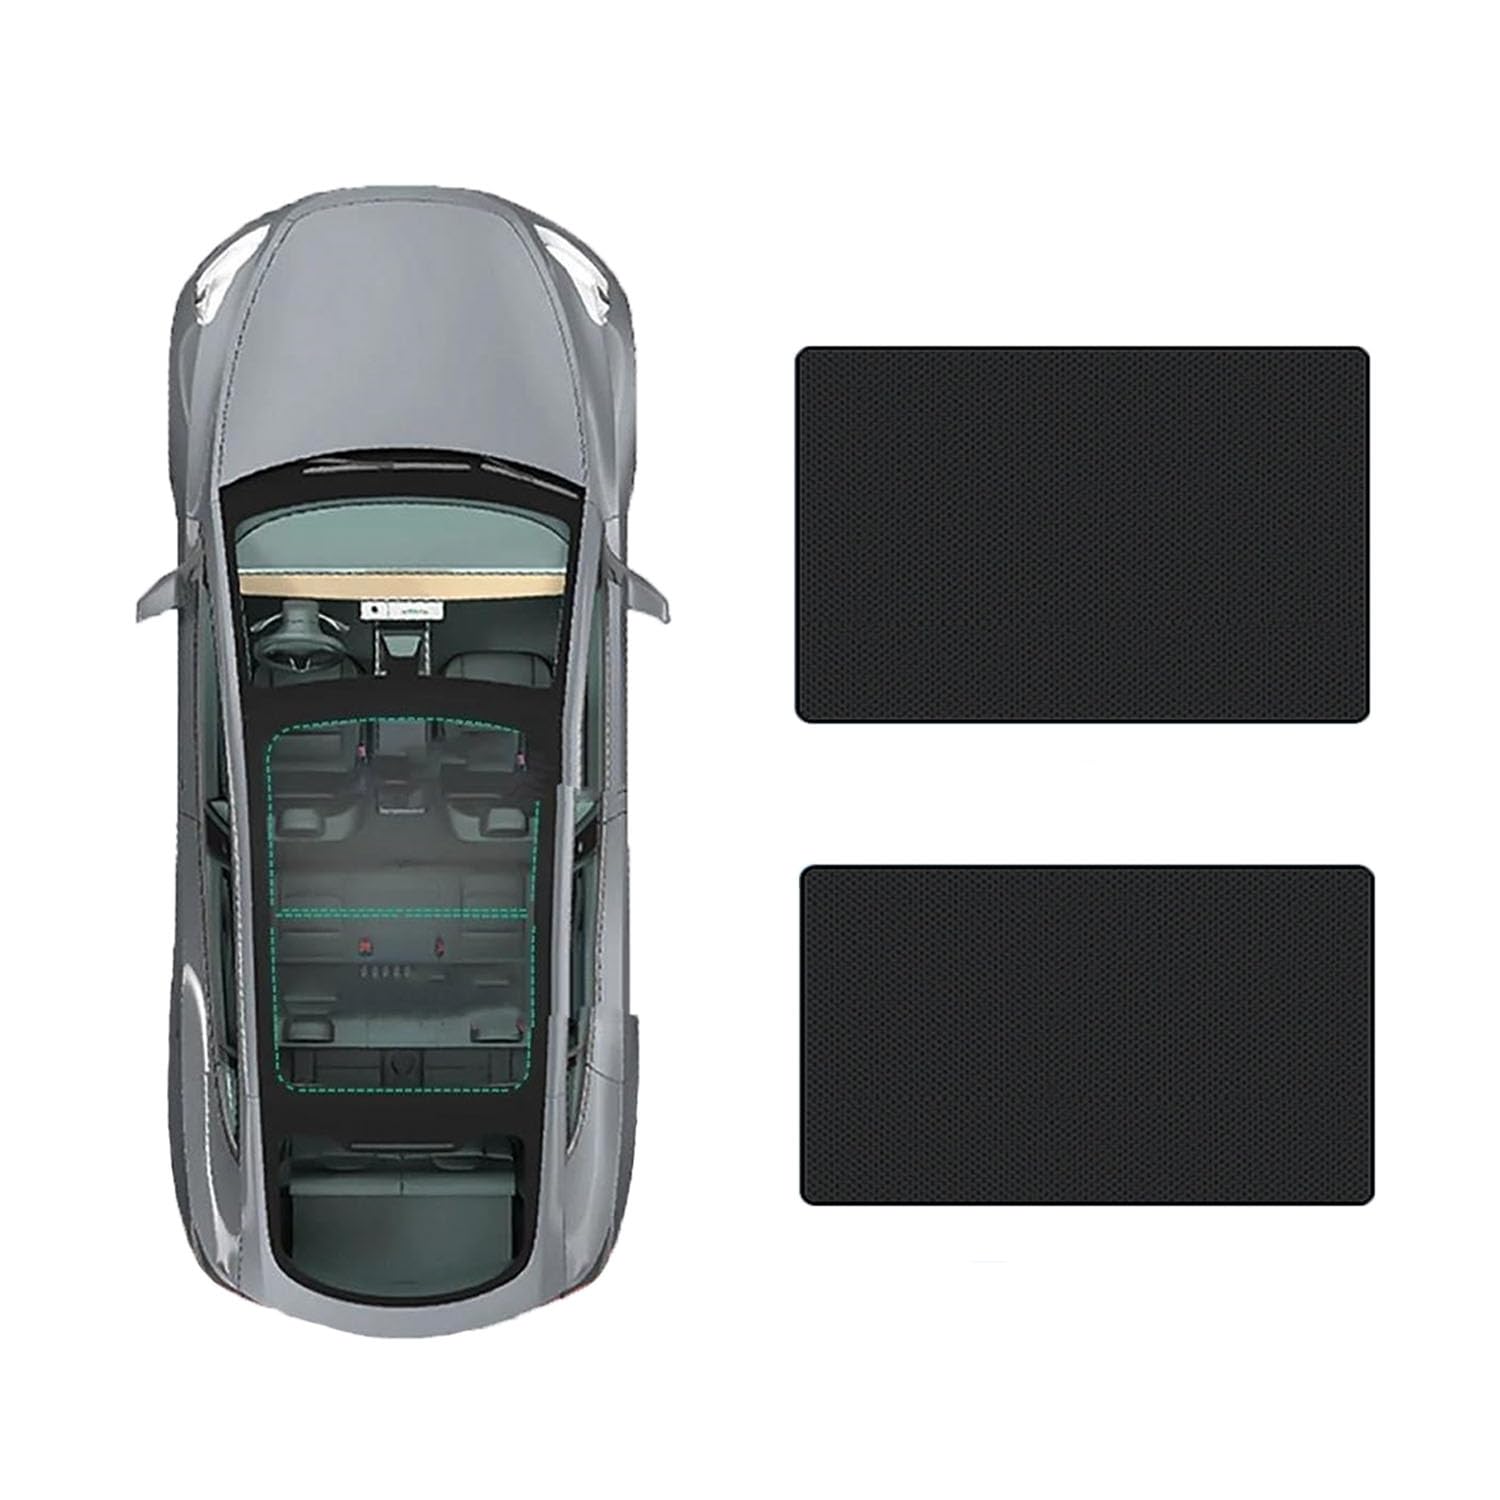 Auto-Schiebedach-Beschattung Für Hyundai Custo 2021-,Auto Schiebedach Sonnenschutz Dach Wärme Isolierung Beschattung Innen Auto Zubehör,C-Black regular Style von LLL6zzzK